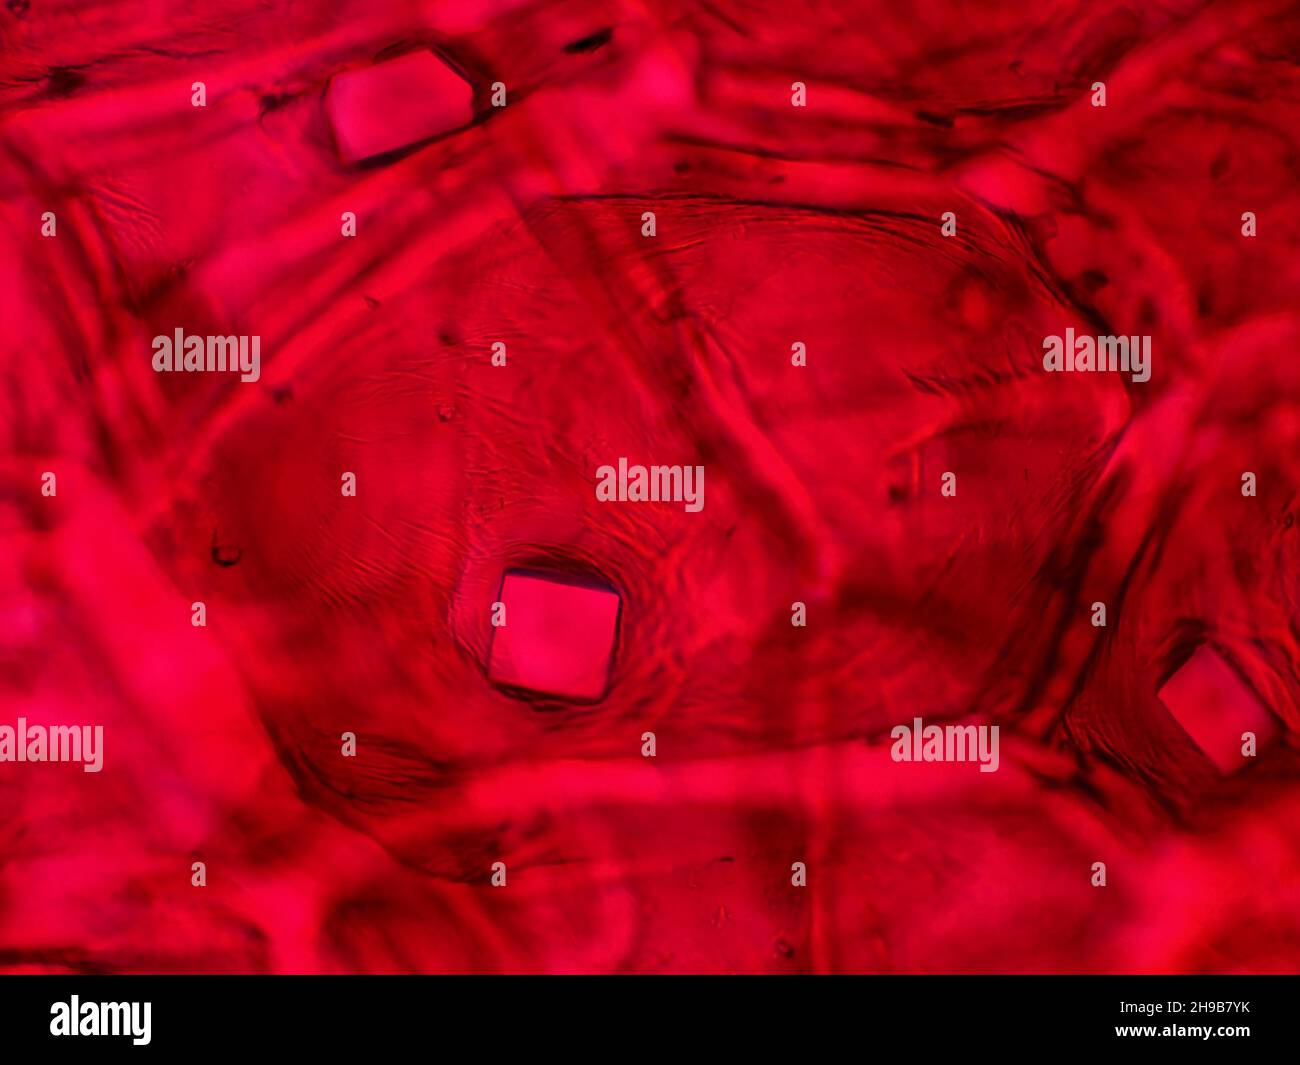 Piel de cebolla roja Con cristales de oxalato bajo el microscopio, el campo de visión horizontal es de aproximadamente 0,24mm Foto de stock